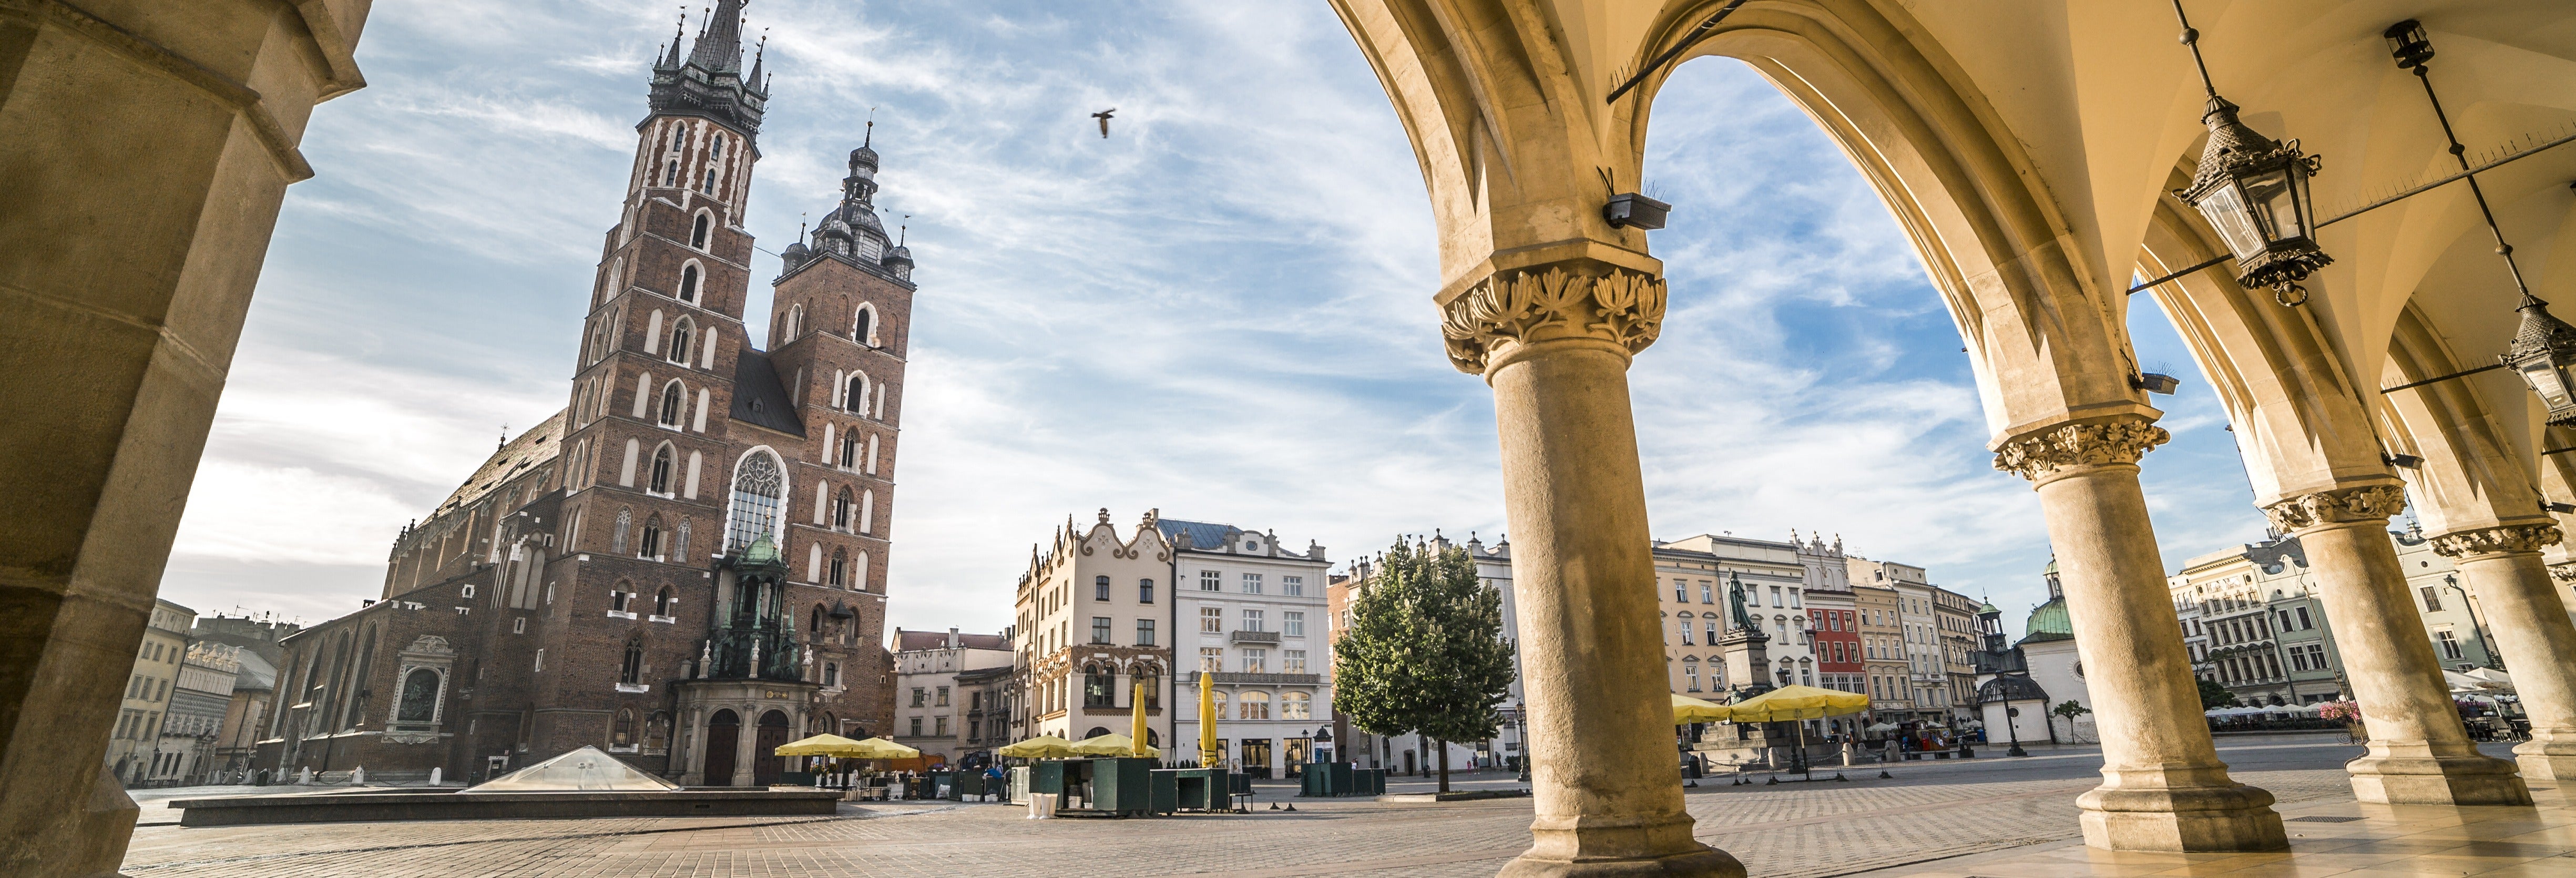 Visita guiada privada por Cracovia con guía en español